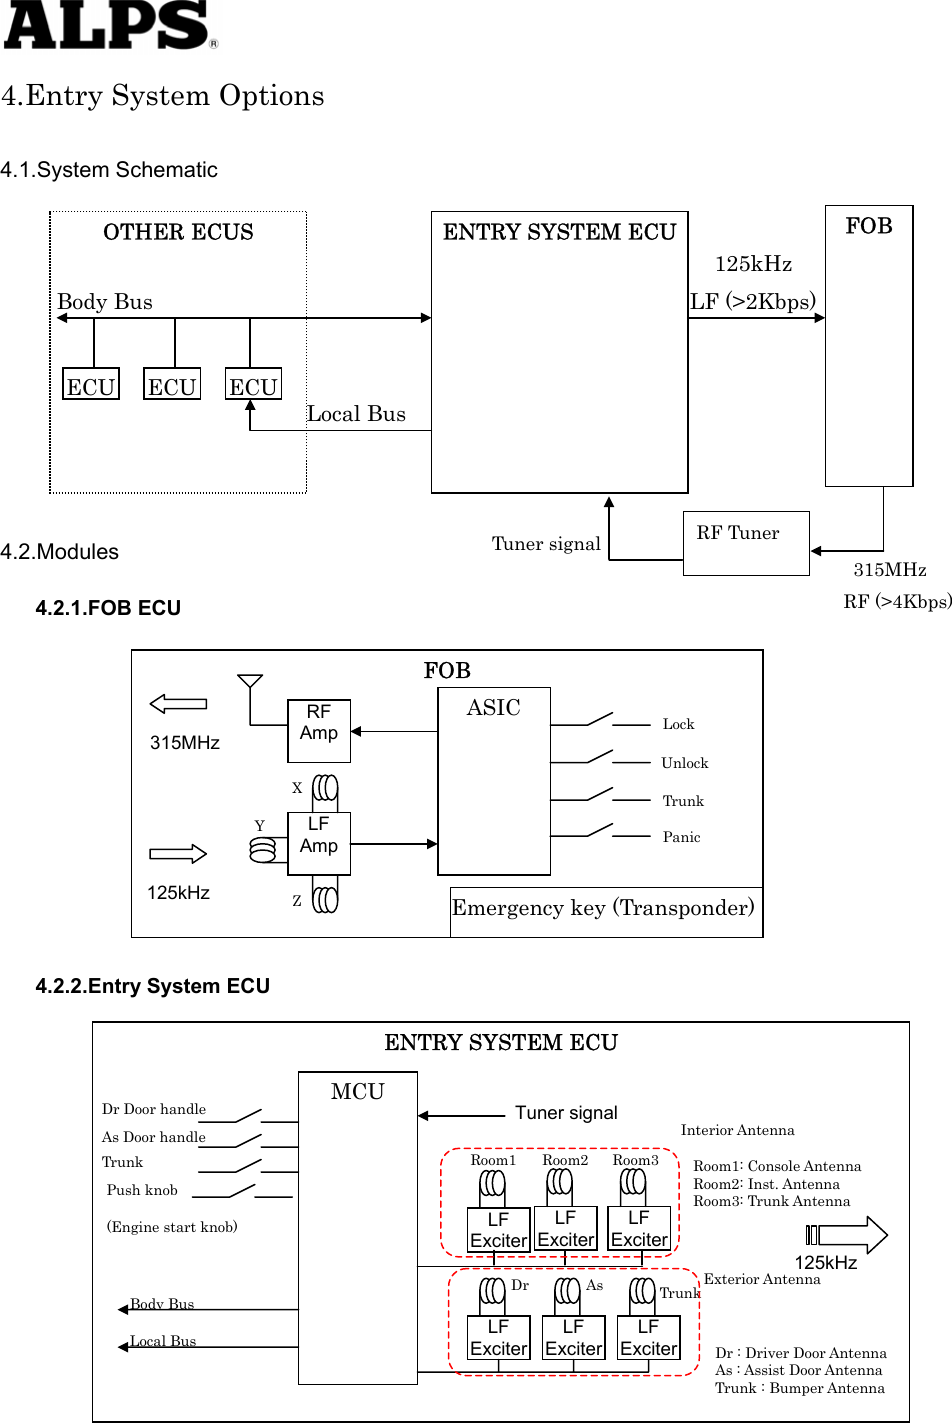   4.Entry System Options  4.1.System Schematic                 4.2.Modules Body Bus OTHER ECUS LF (&gt;2Kbps) Local BusECU ECU ECU315MHzRF Tuner Tuner signal 125kHz FOB ENTRY SYSTEM ECURF (&gt;4Kbps) 4.2.1.FOB ECU   Panic 315MHz 125kHz  Emergency key (Transponder) Trunk Unlock   Lock   ZFOB RF Amp LF Amp Y X ASIC              4.2.2.Entry System ECU  Tuner signal  Interior Antenna LF ExciterLF ExciterLF ExciterLF ExciterRoom1 DrAsTrunk Exterior Antenna 125kHz Dr : Driver Door Antenna As : Assist Door Antenna Trunk : Bumper Antenna Room1: Console Antenna   Room2: Inst. Antenna   Room3: Trunk Antenna LF ExciterLF ExciterRoom2 Room3 Local BusBody BusPush knob (Engine start knob) Dr Door handleAs Door handle Trunk MCU ENTRY SYSTEM ECU                    